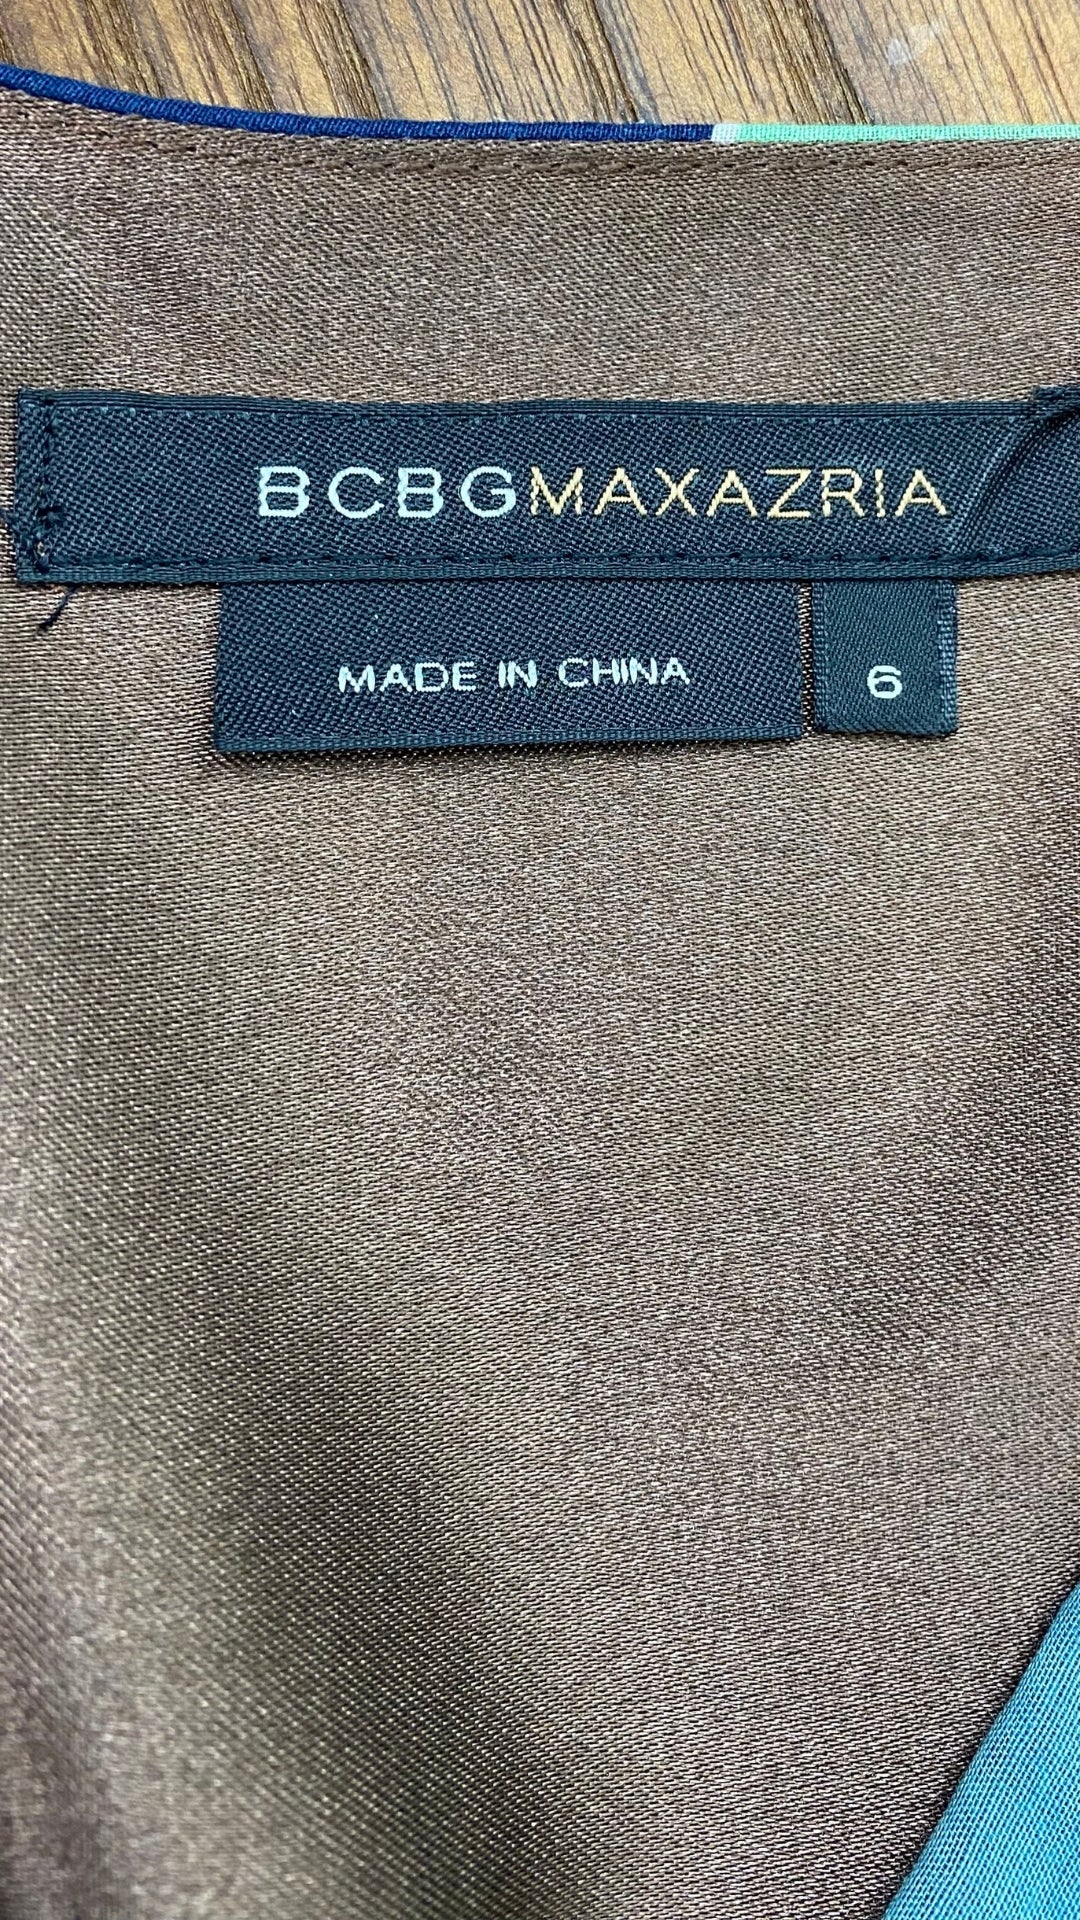 Robe à rayures et motifs géo en soie et coton BCBG Max Azria, taille 6. Vue de l'étiquette de marque et taille.